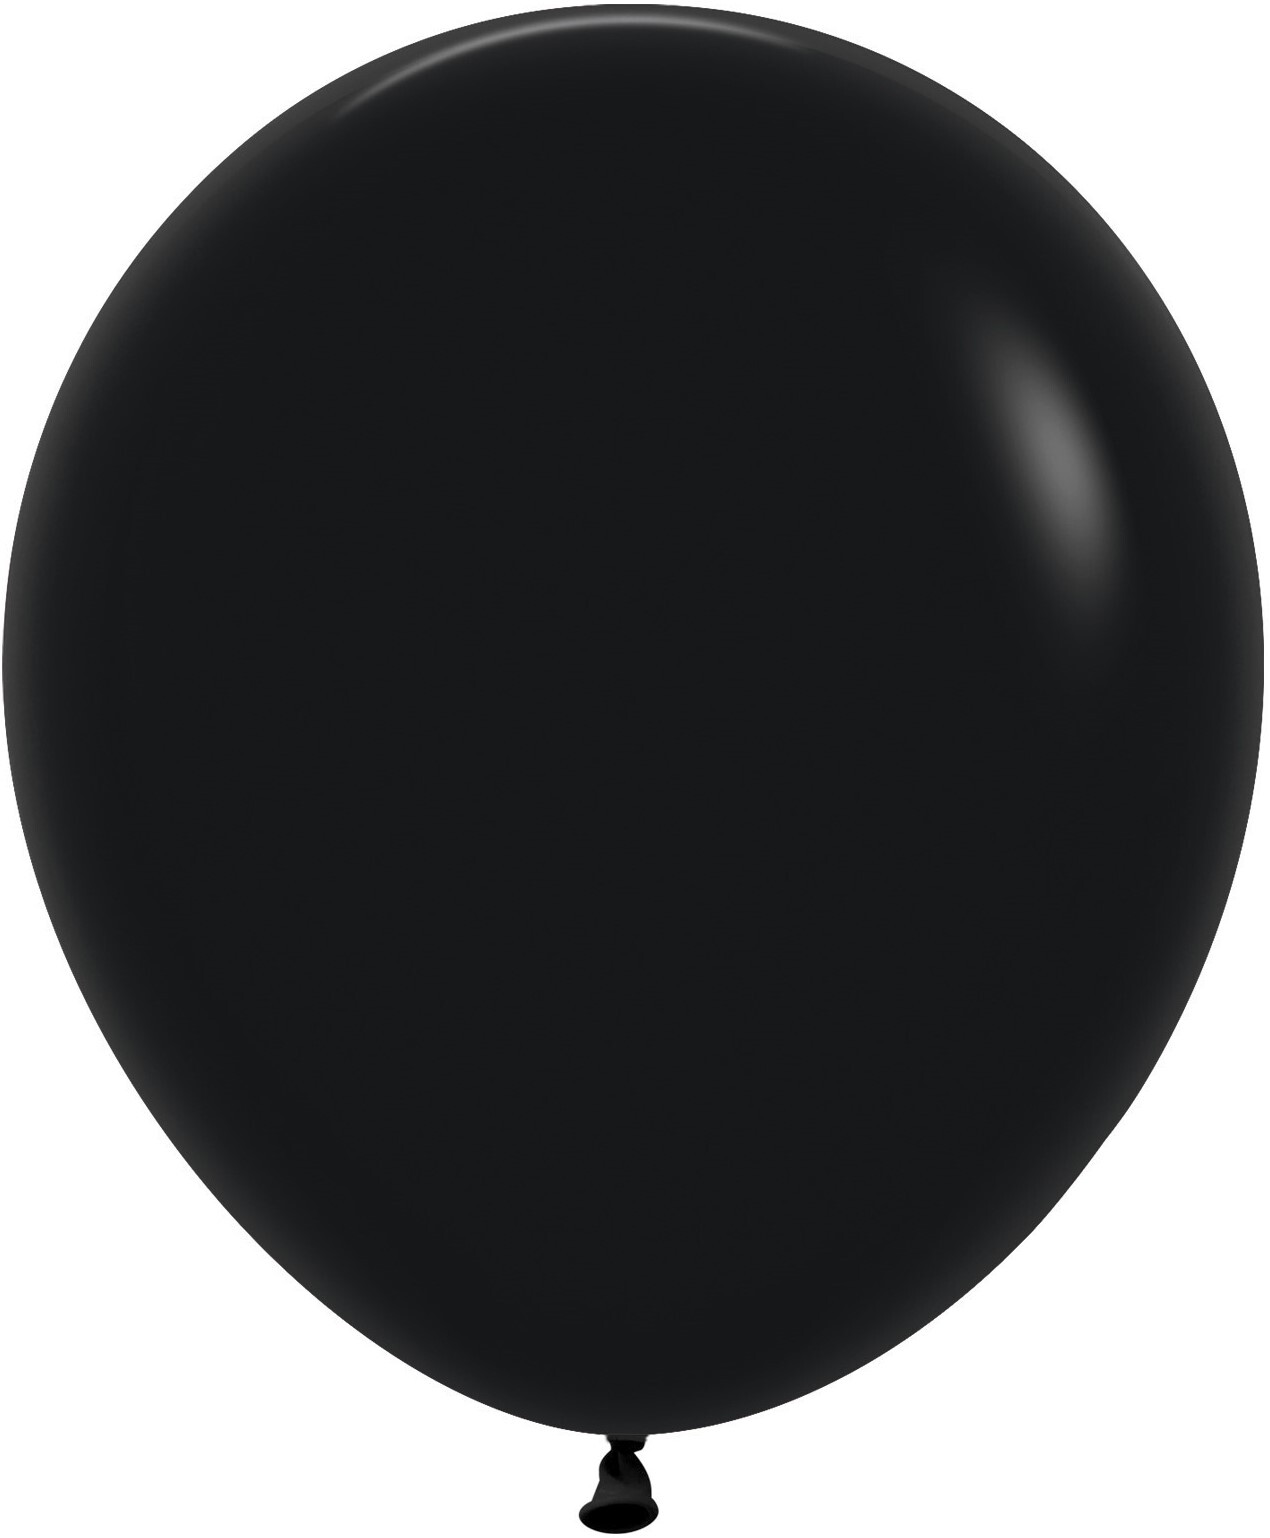 Черный воздушный шарик. Черный шар 60 см Семпертекс. Шары черный металлик Семпертекс. S 24"/60 см пастель черный 1 шт. Шар пастель е 10" черный (Black) 1102-1565 Gemar {Китай}.